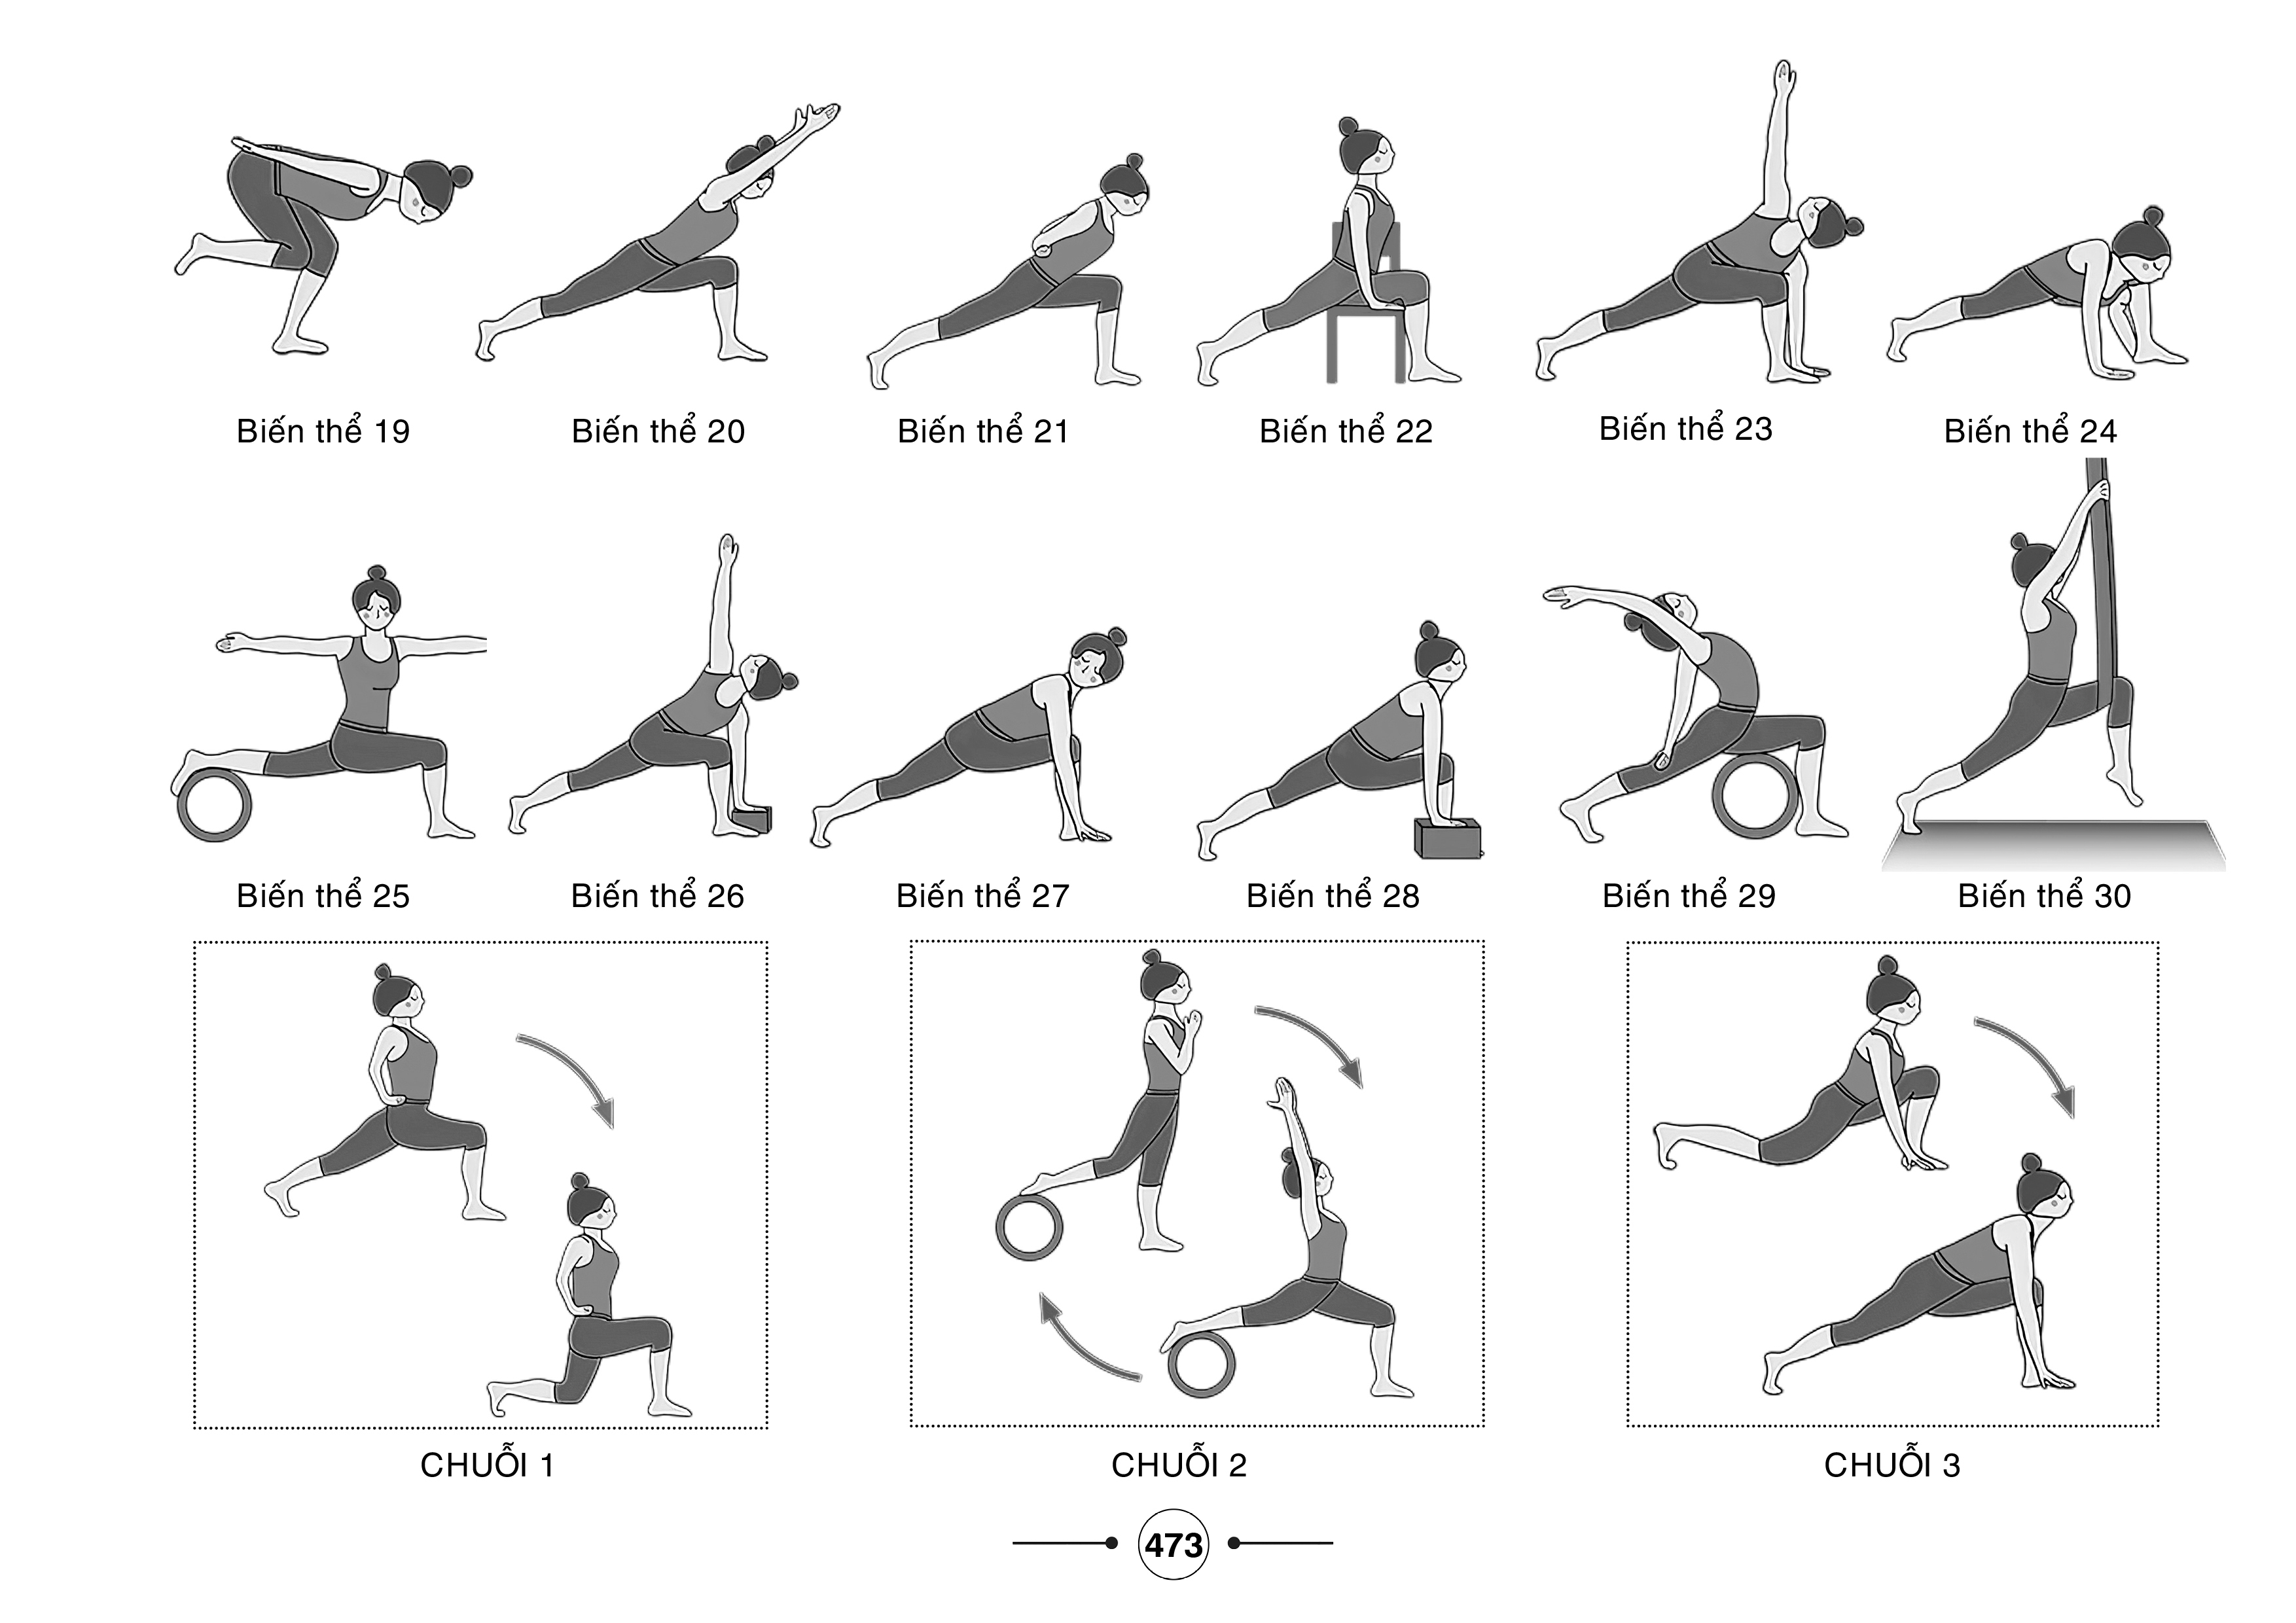 Hệ thống 1500 biến thể tư thế - 100 chuỗi bài yoga liên hoàn (50 biến thể chào mặt trời, chào mặt trăng + 50 chuỗi bài lên lớp hay nhất)